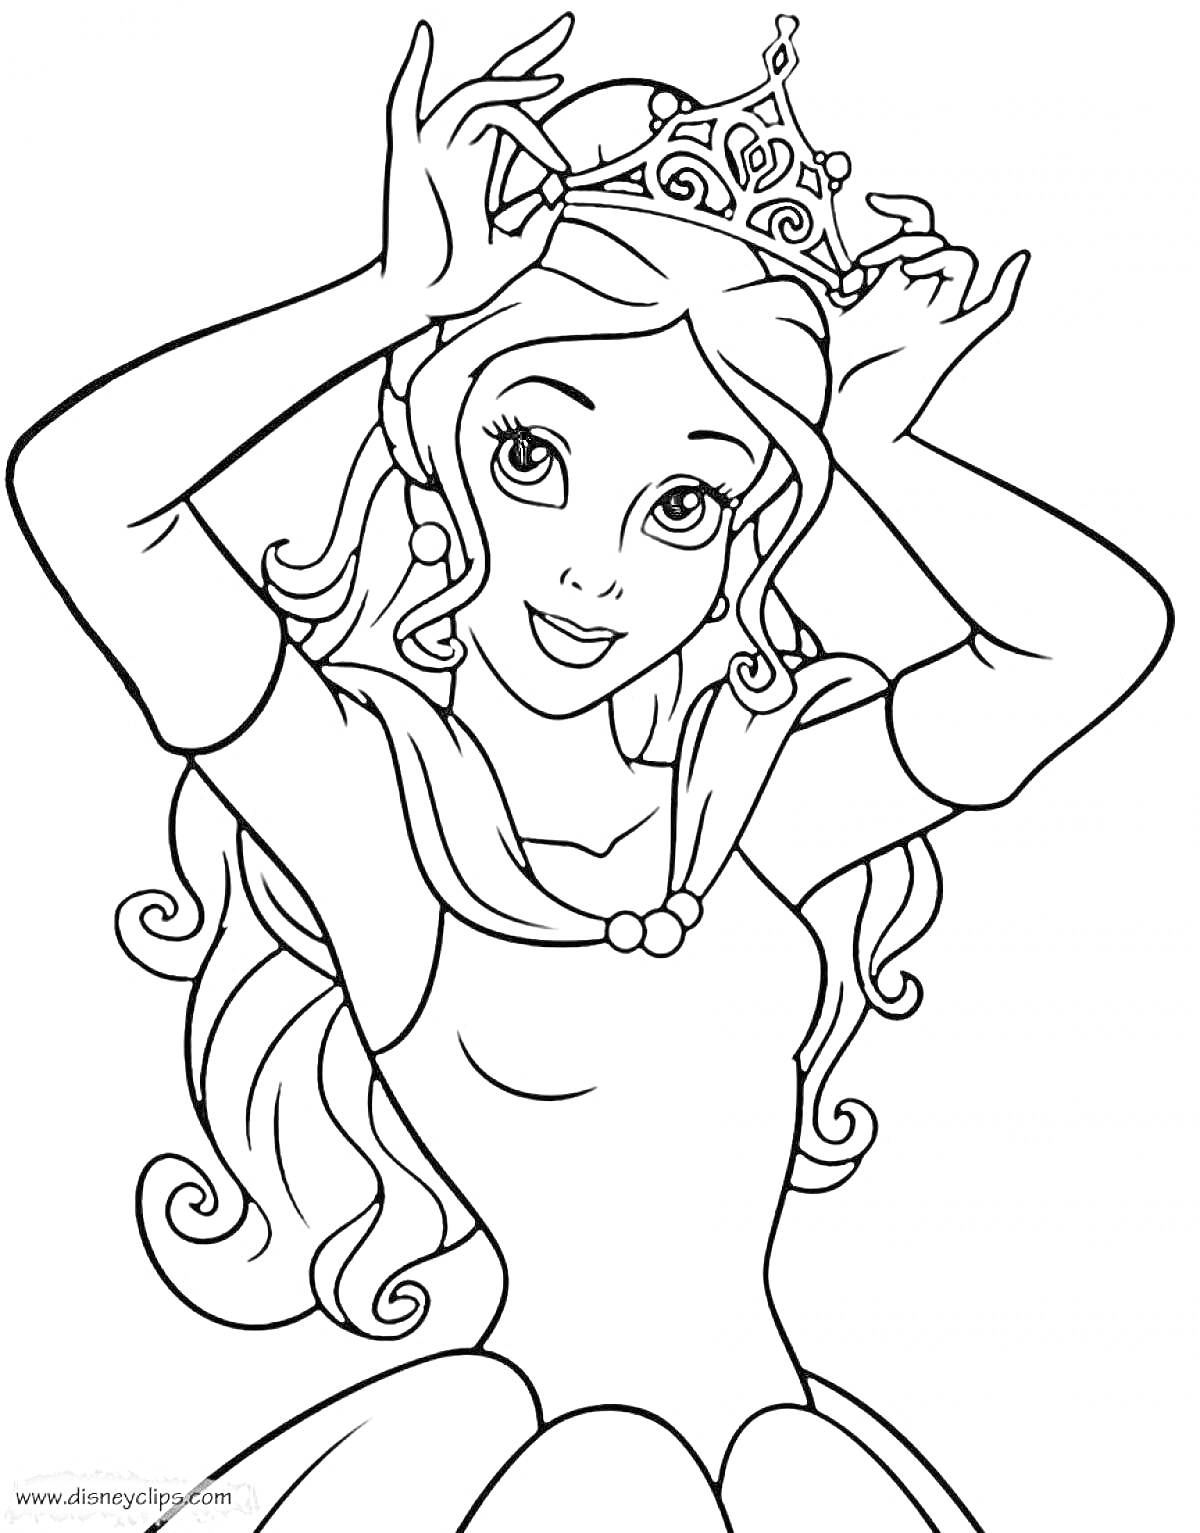 Раскраска Принцесса с короной, длинные волосы, украшение на шее